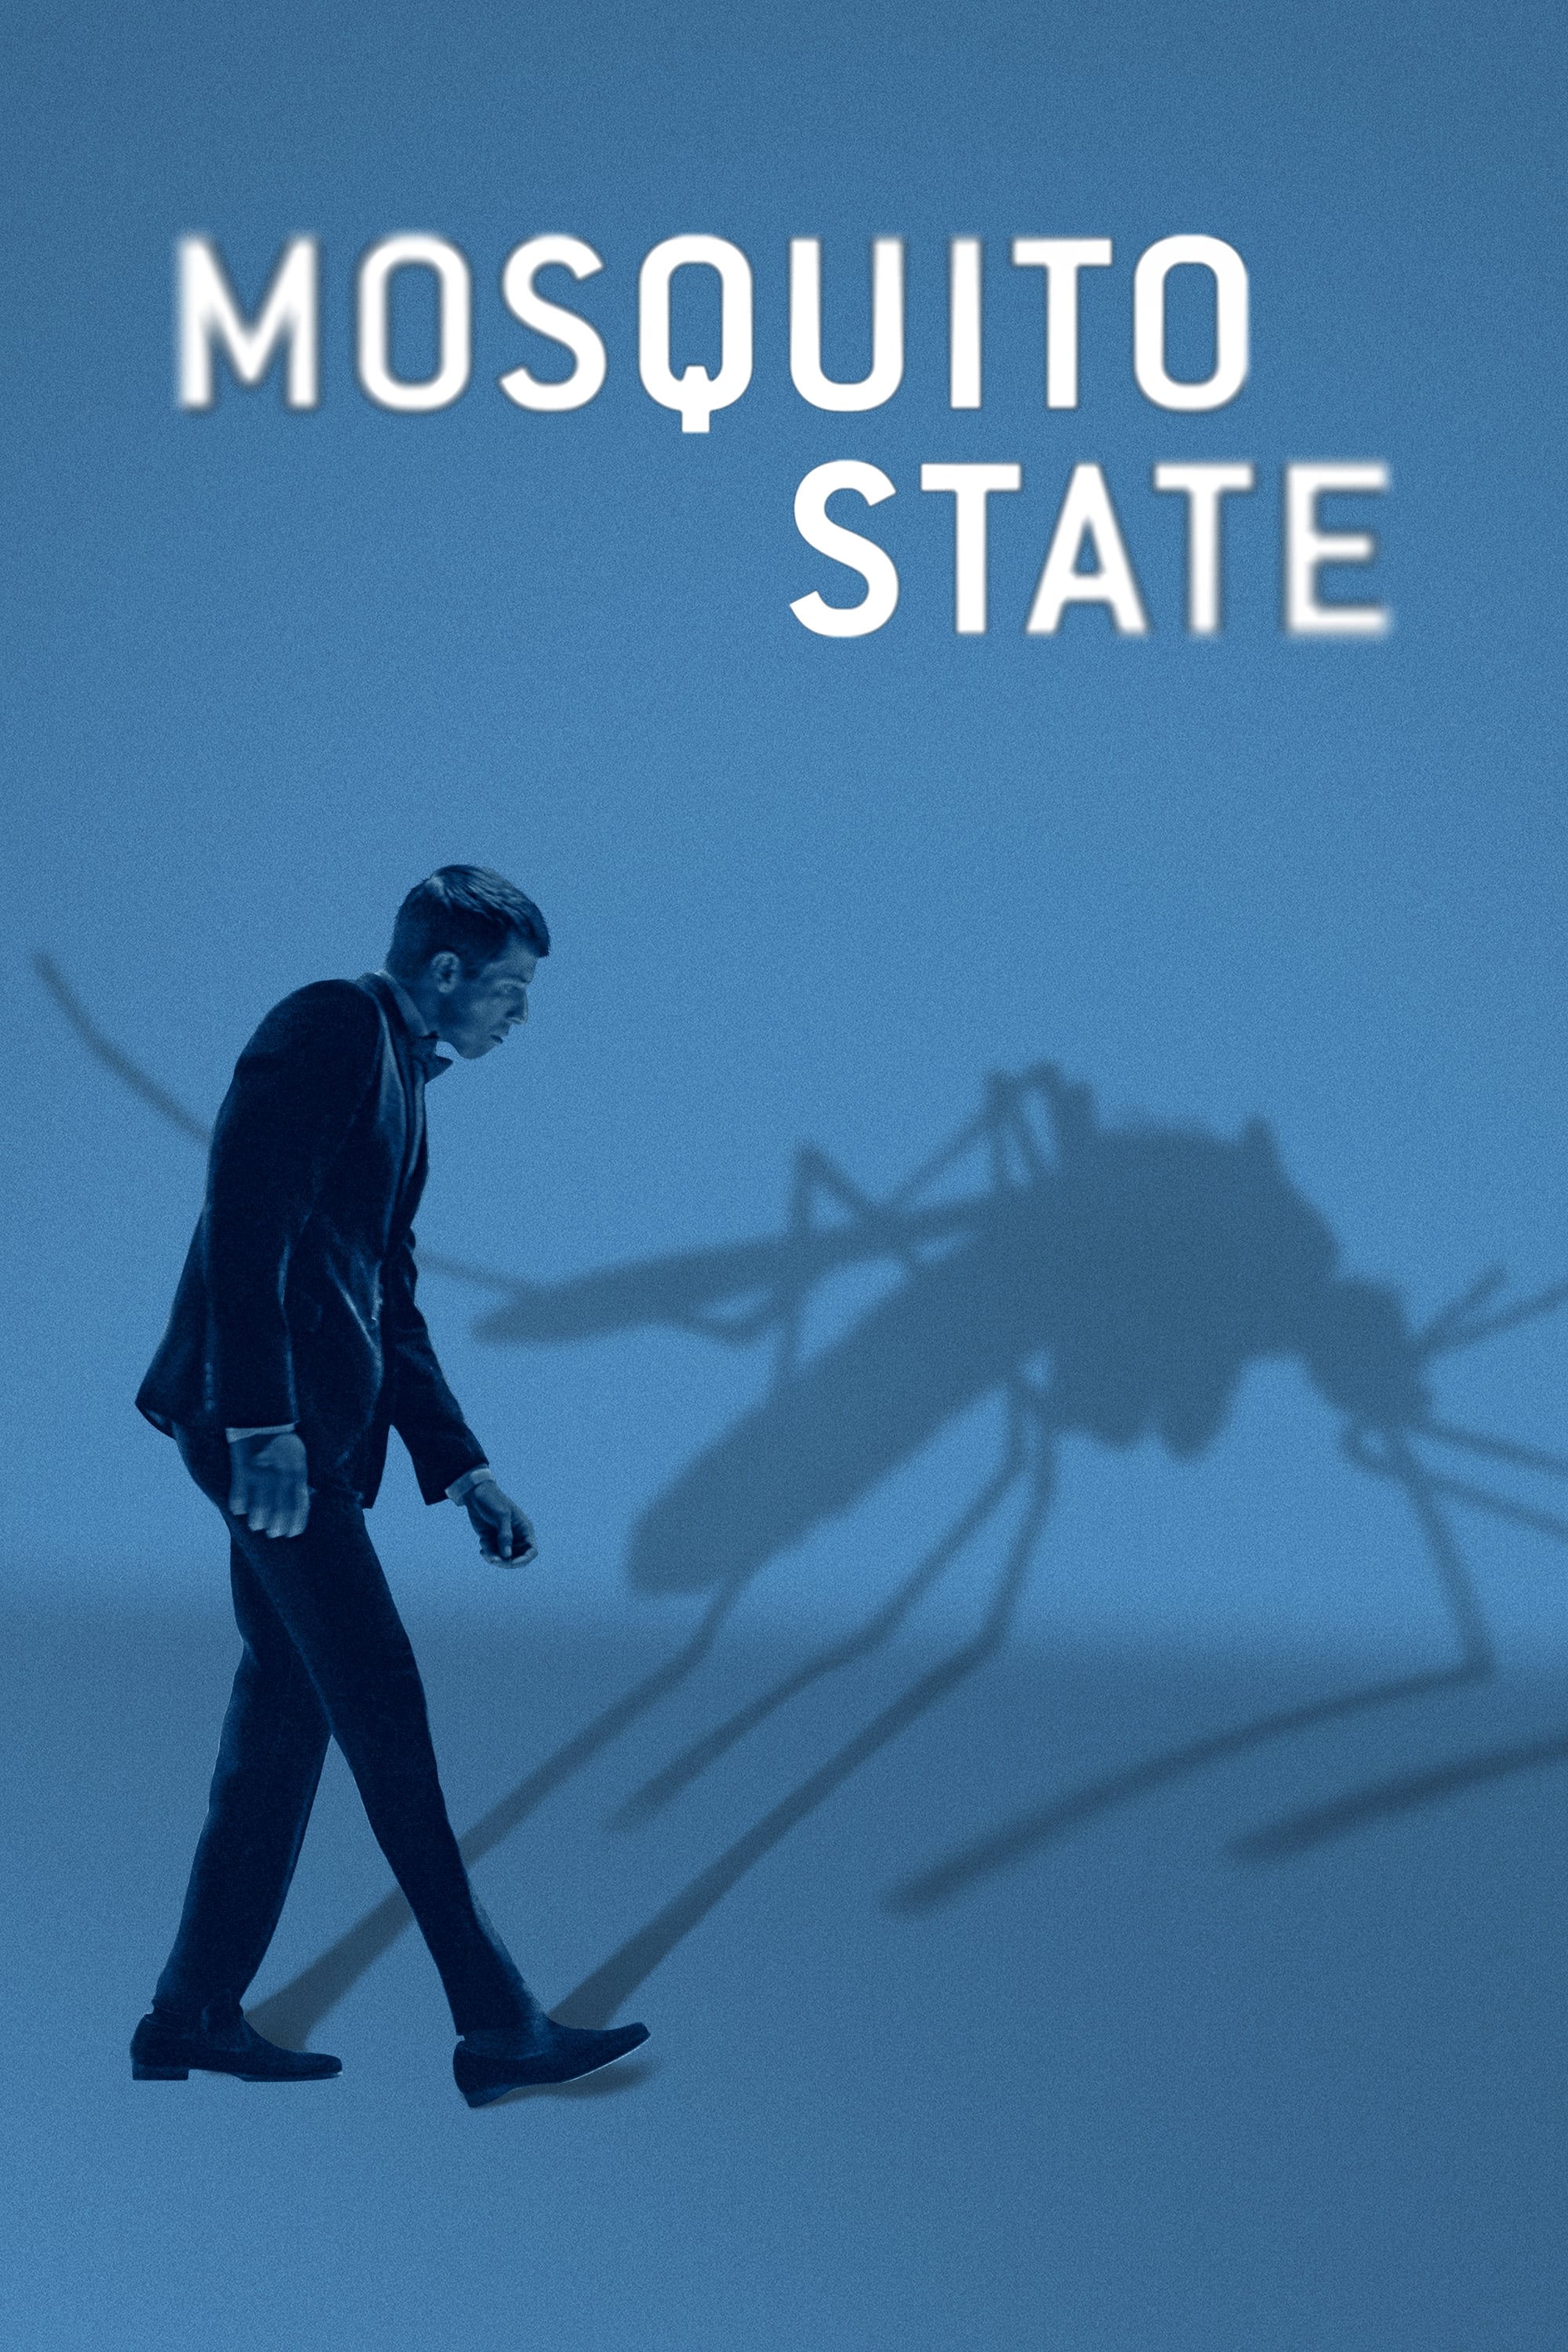 Mosquito State (2020) poster - Allmovieland.com